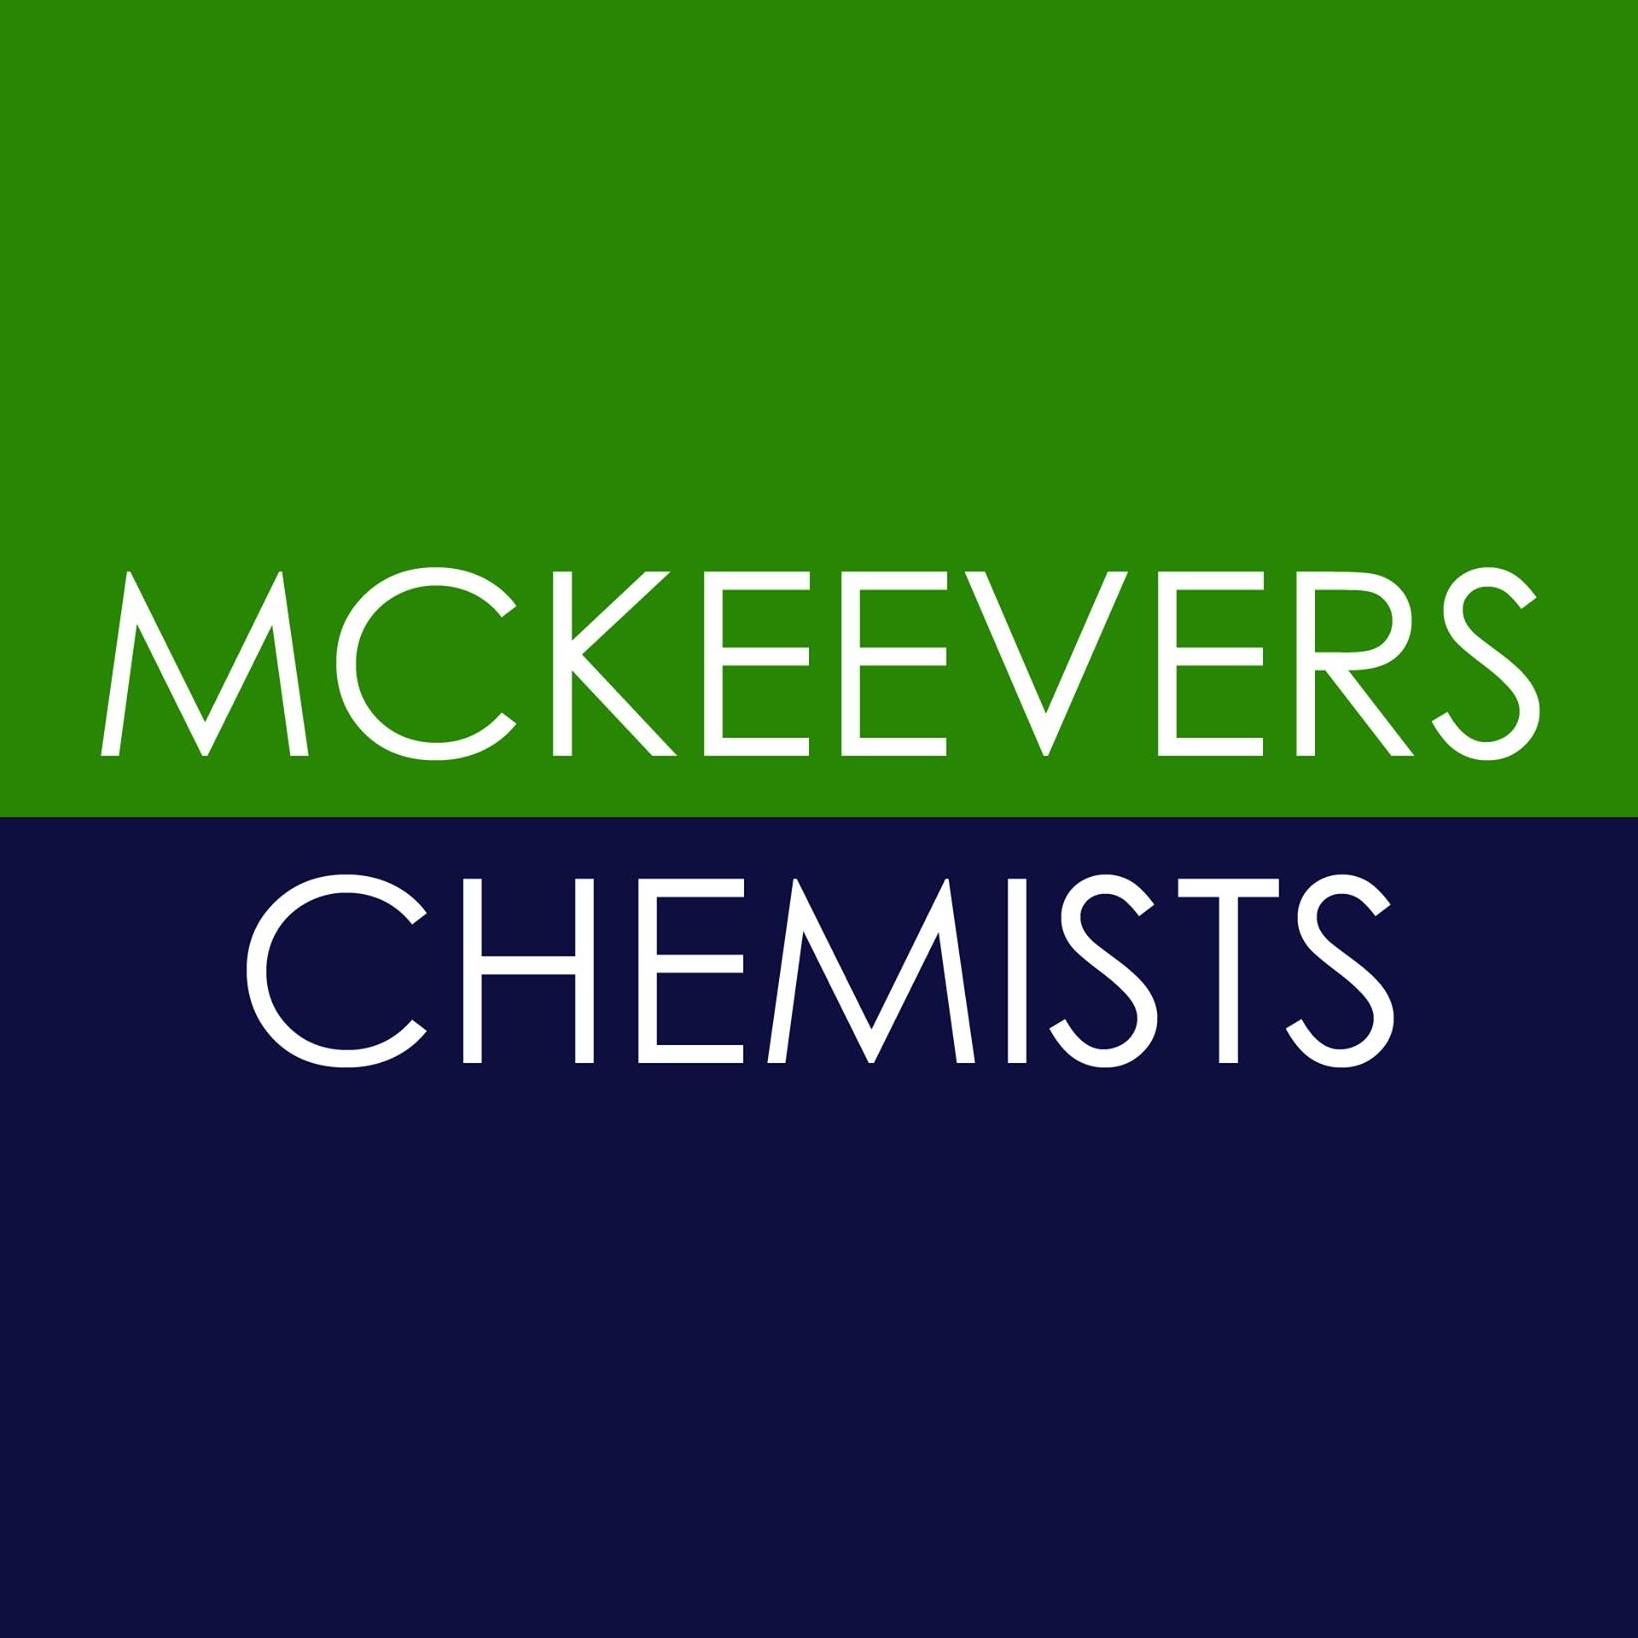 McKeevers Chemists – On the Bridge